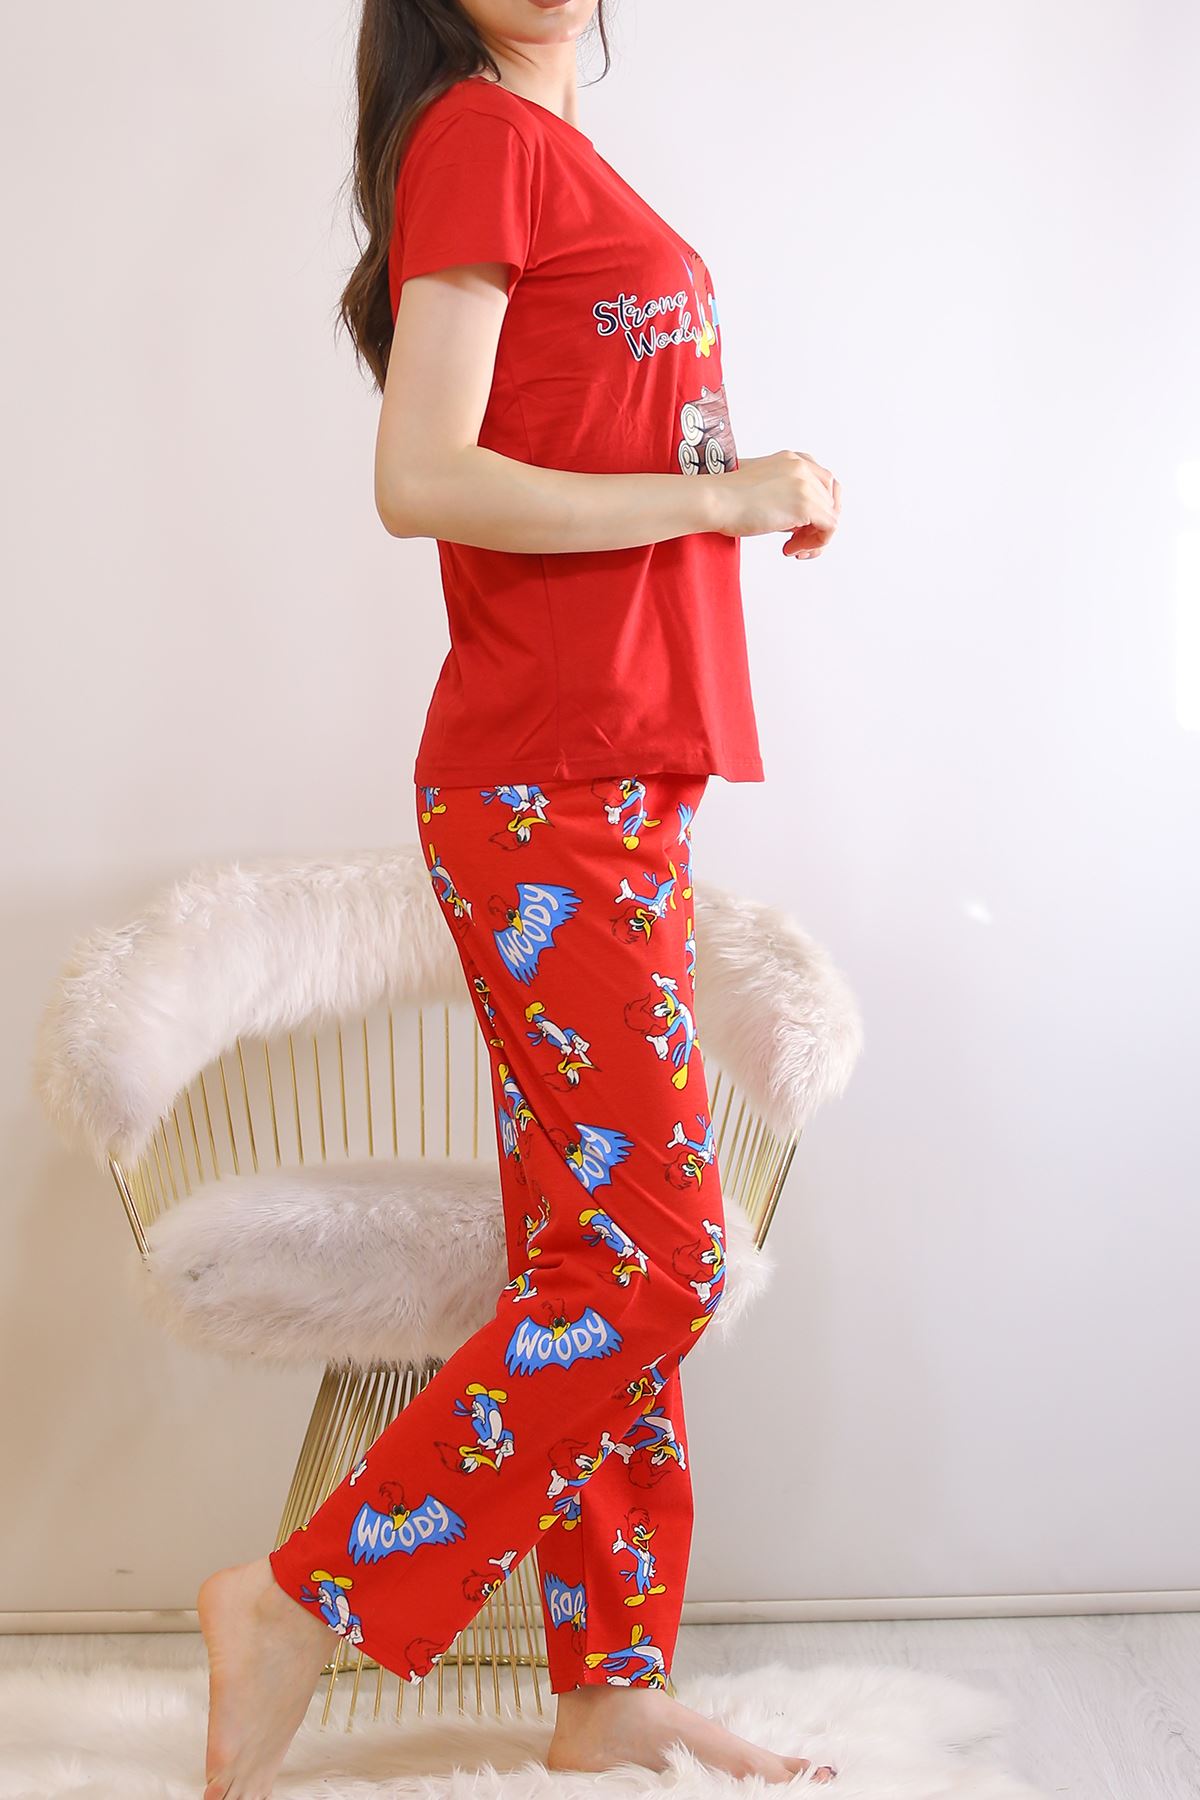 Pijama Takımı Kırmızı - 21913.1059.